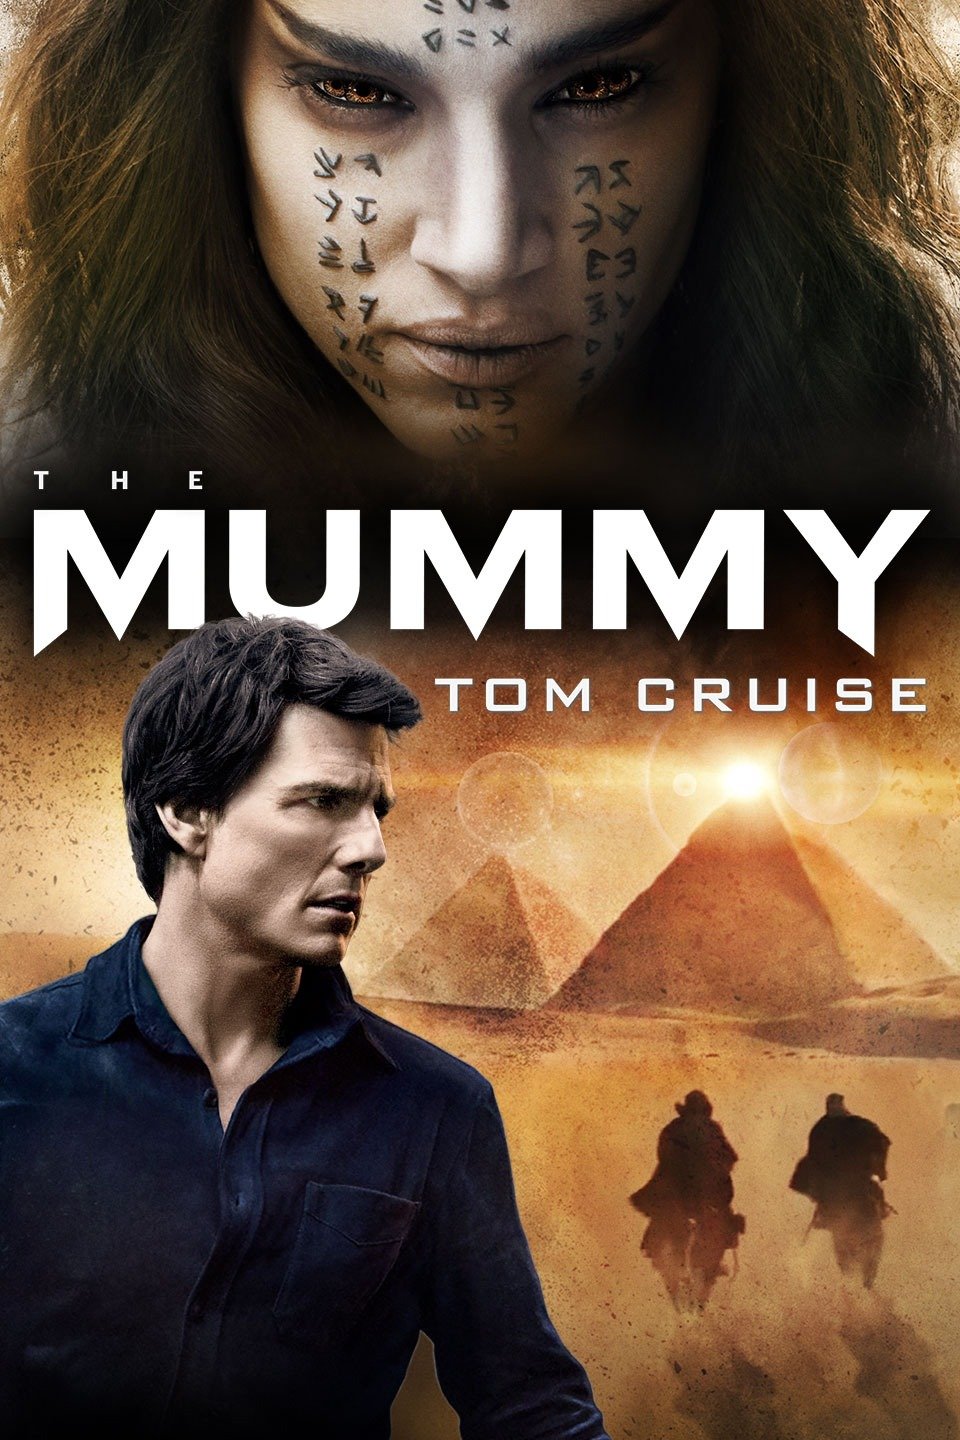 [MINI Super-HQ] The Mummy (2017) เดอะ มัมมี่ [Master] [พากย์ไทย DTS + เสียงอังกฤษ DTS] [BrRip.DTS.x264.THB] [บรรยายไทย + อังกฤษ] [เสียงไทย + ซับไทย] [ONE2UP]